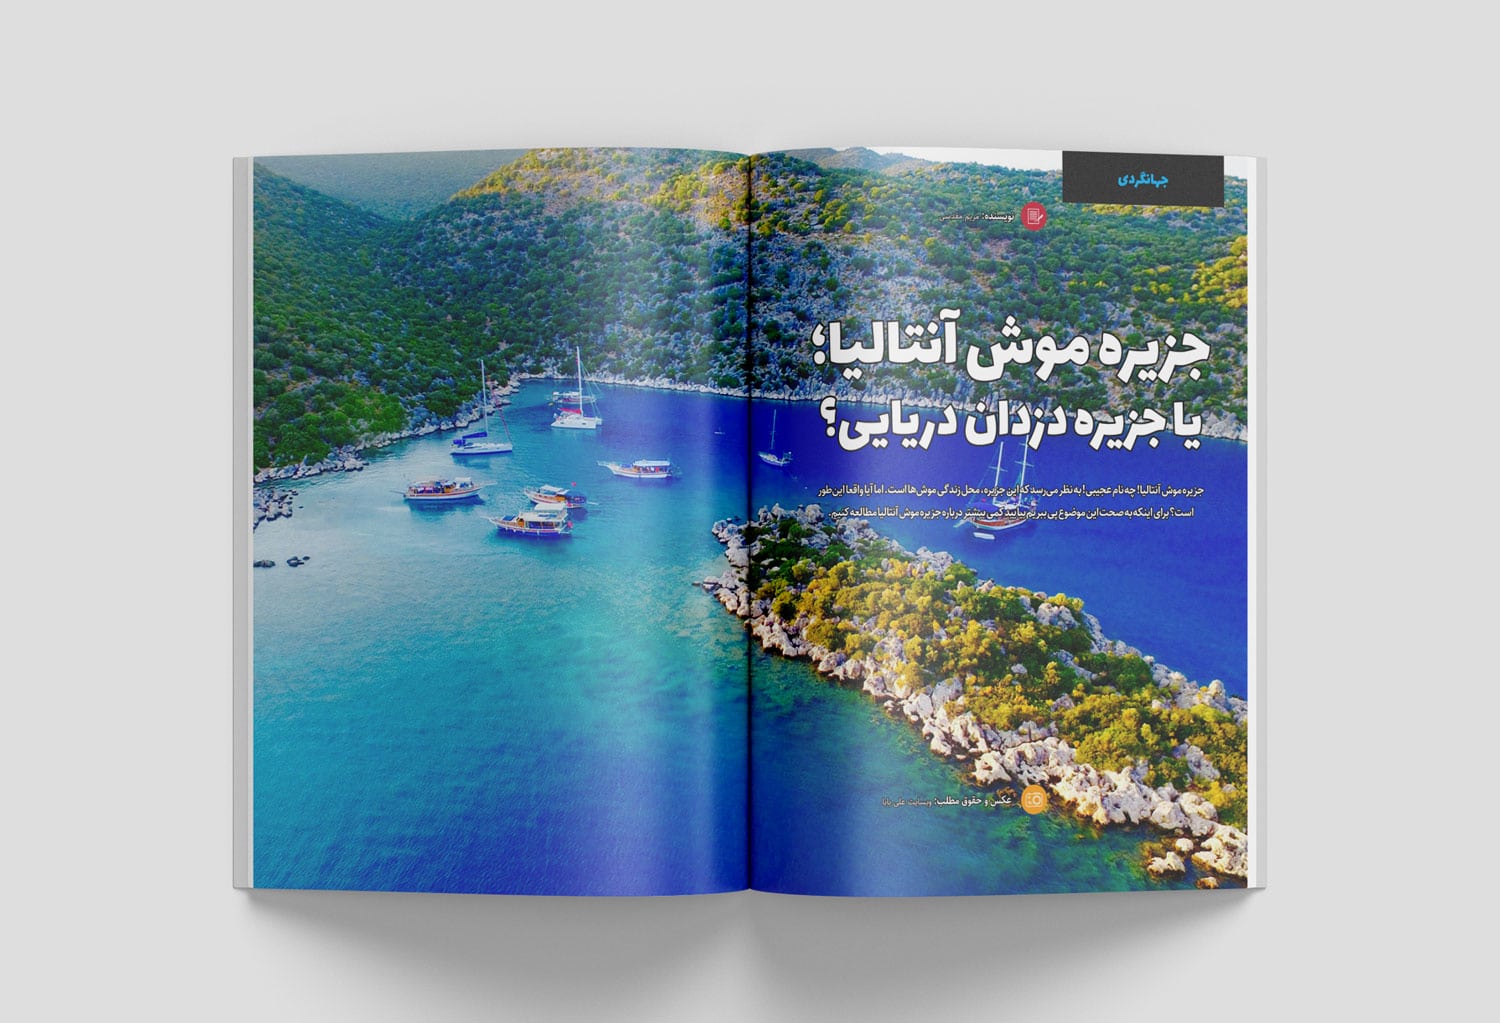 قالب آماده صفحه آرایی و طراحی مجله ایرانی و نشریه الکترونیکی فارسی با ایندیزاین